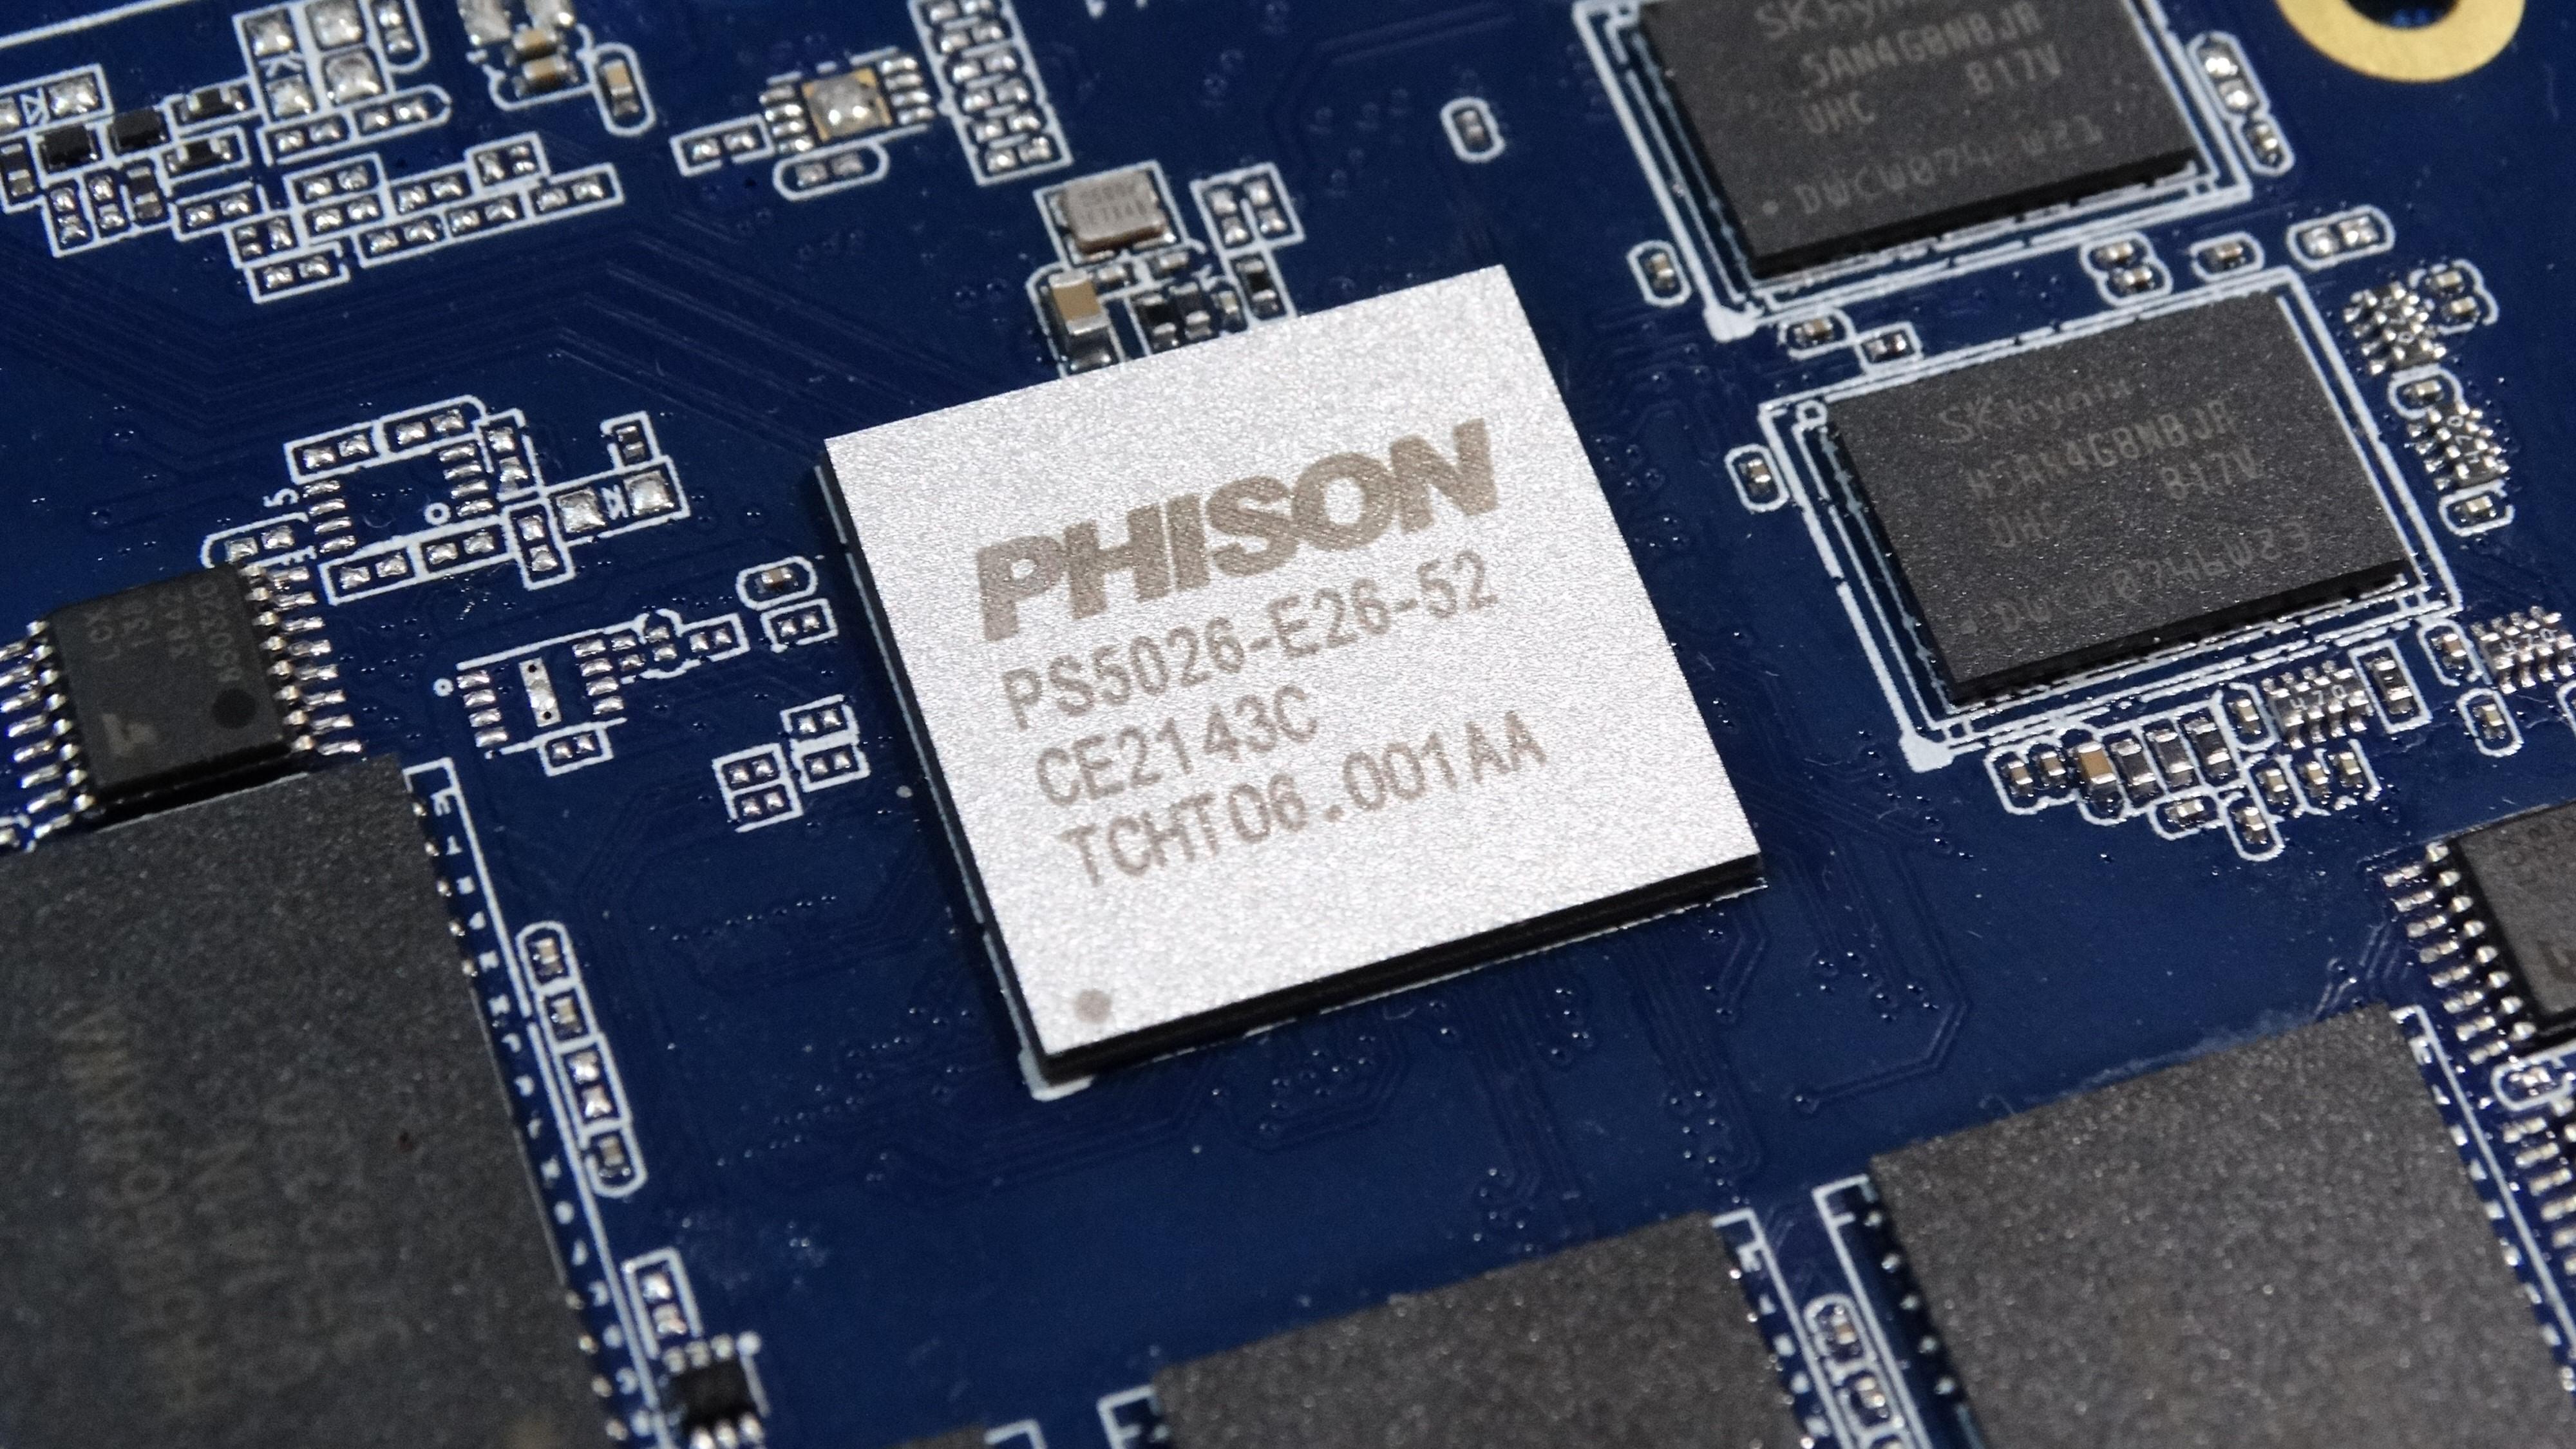 Phison i rute med neste generasjon SSD-kontroller